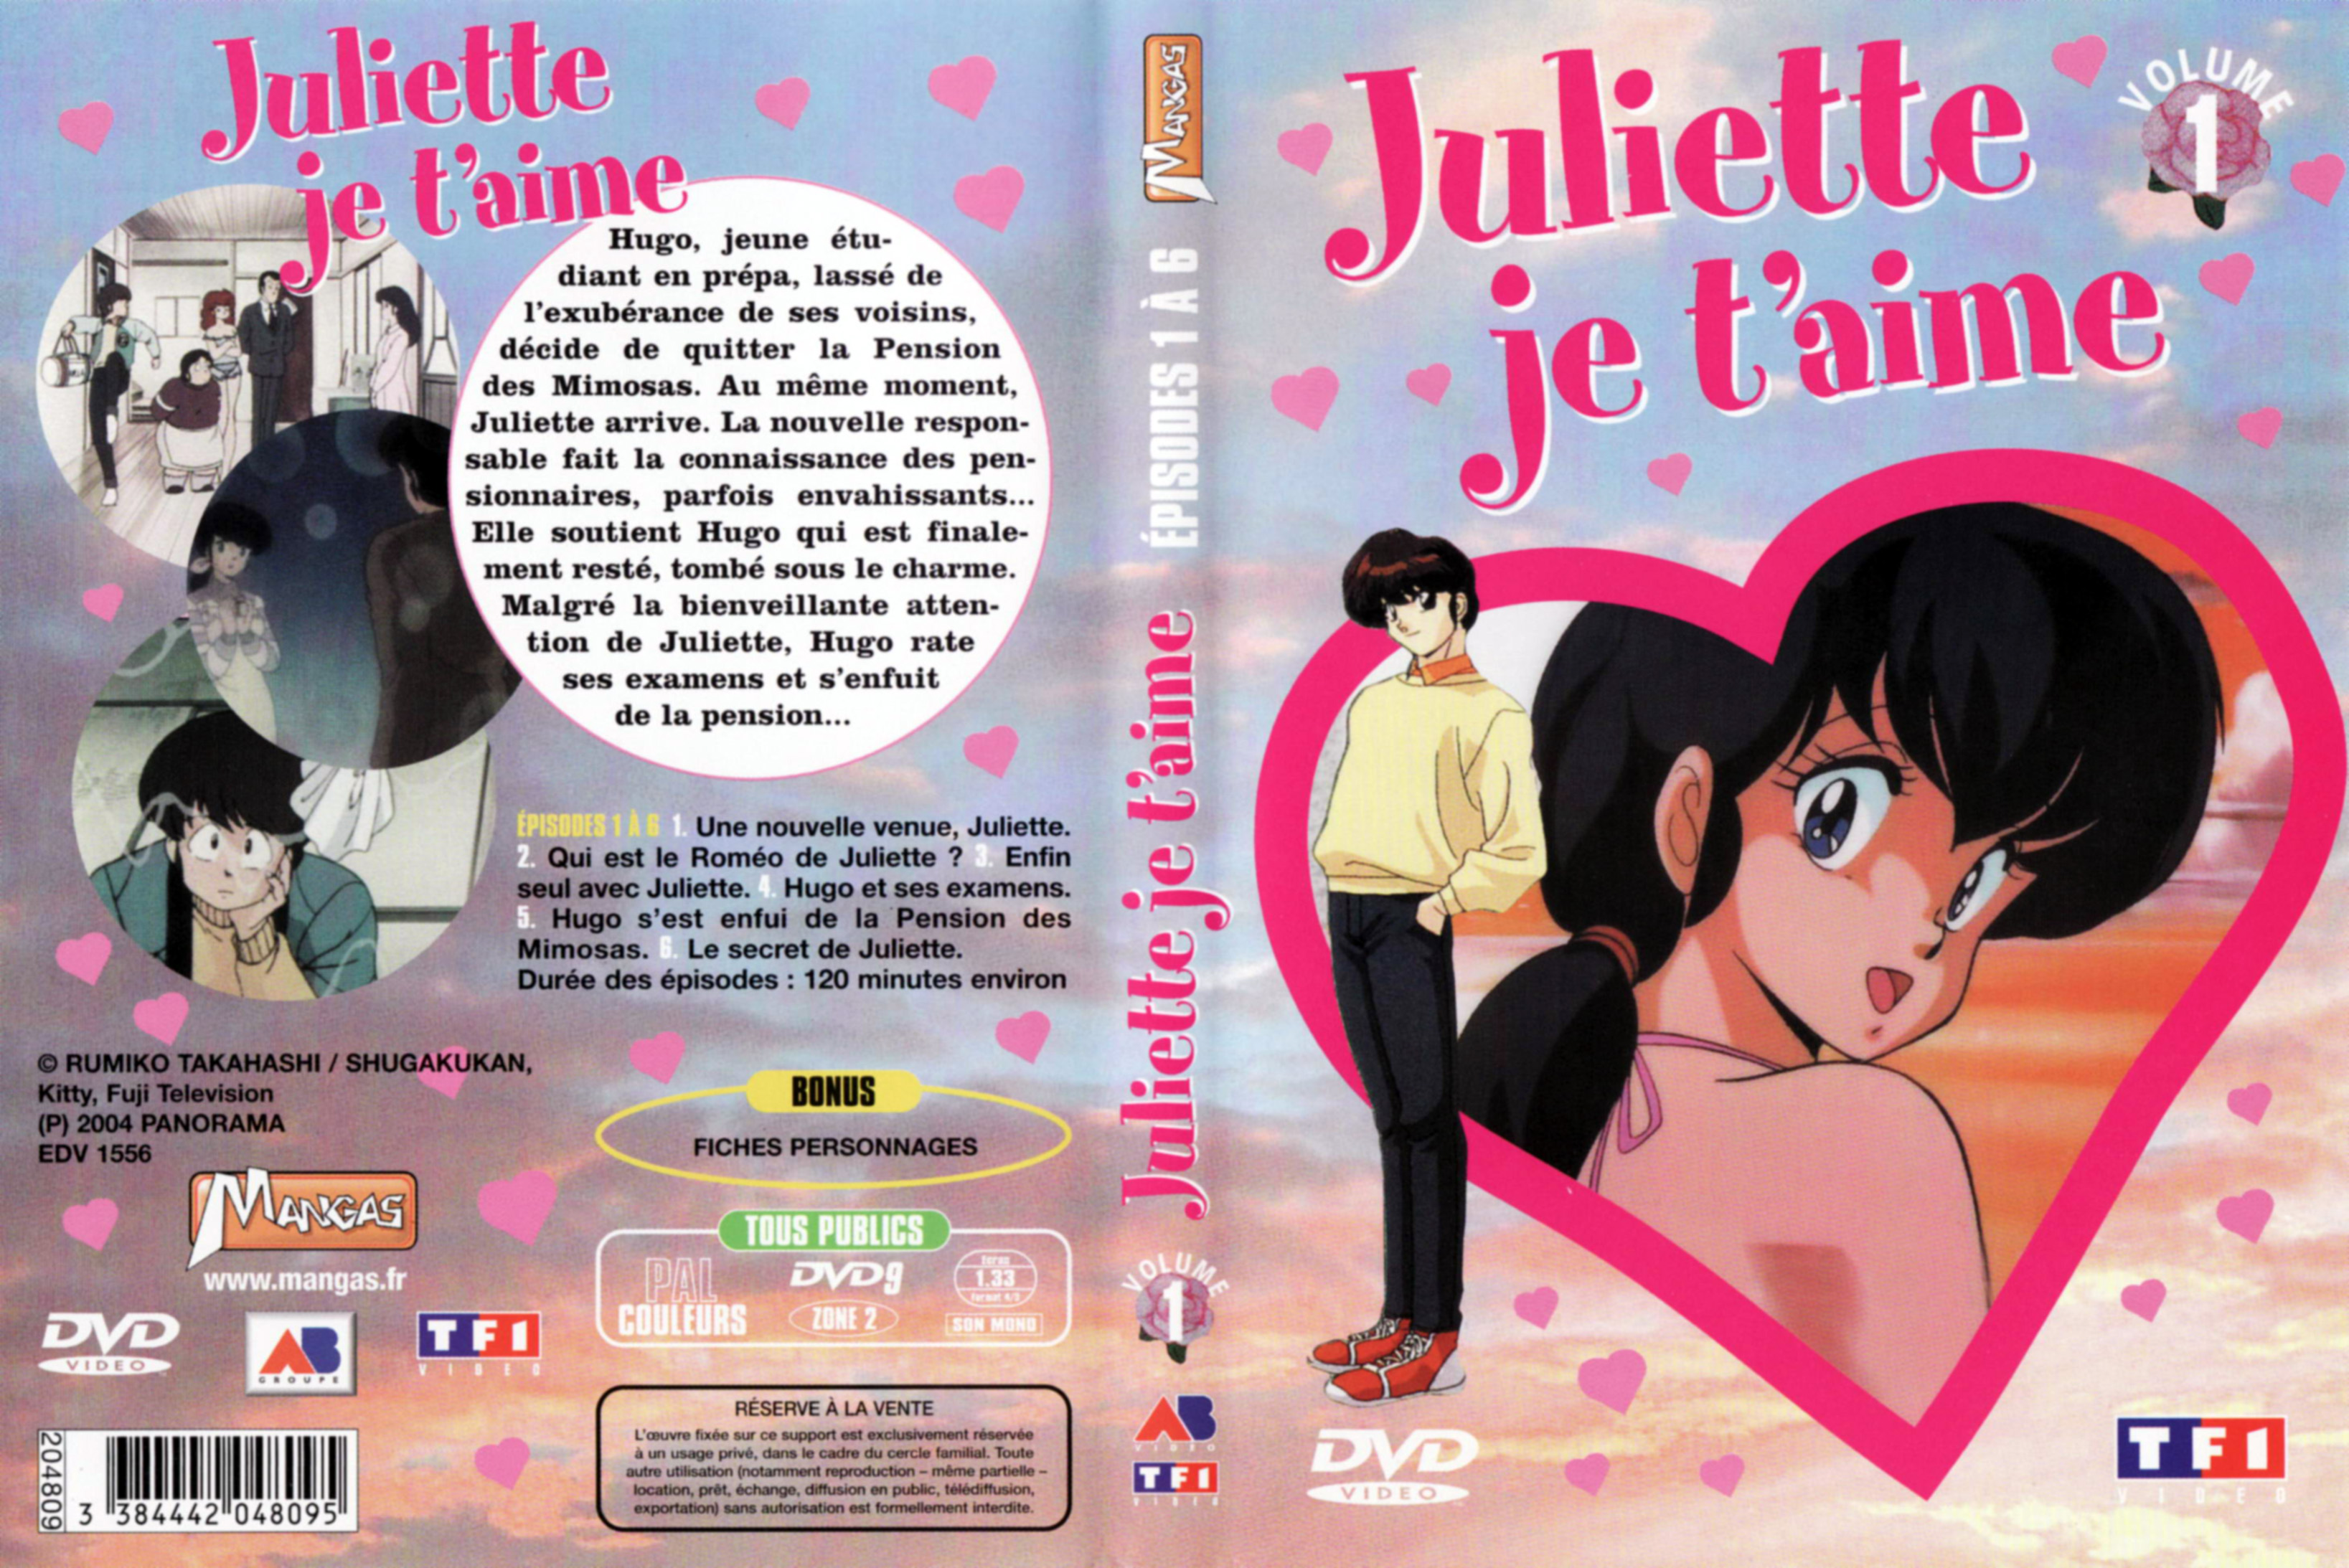 Jaquette DVD Juliette je t aime vol 01